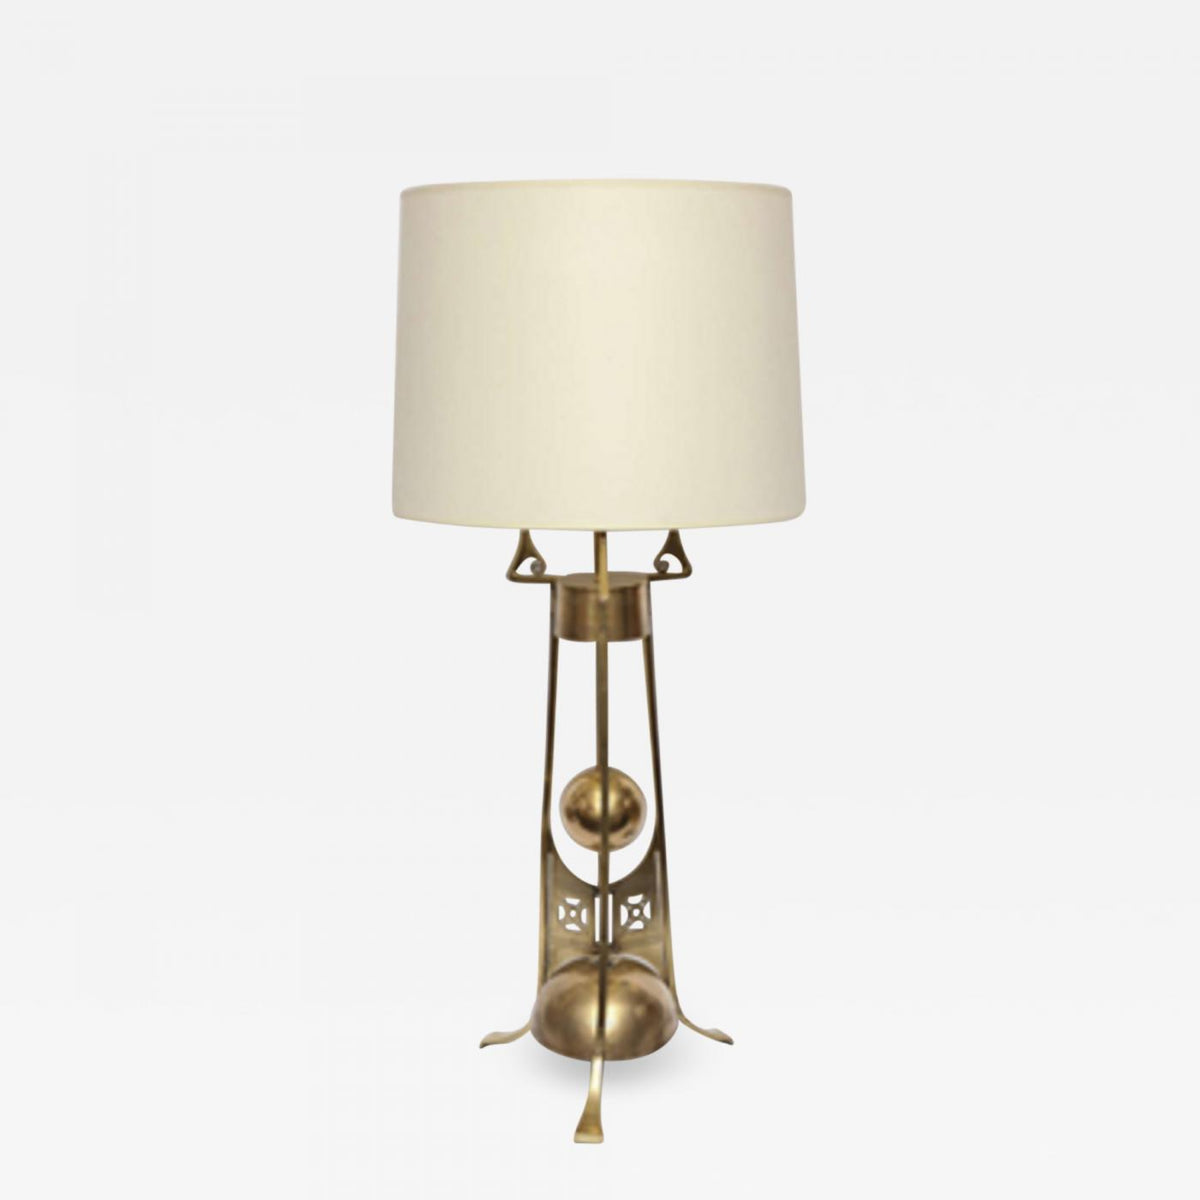 Regeneratie Zullen beroemd Table Lamp Jugendstil brass Denmark 1900's – Retromodernstudio